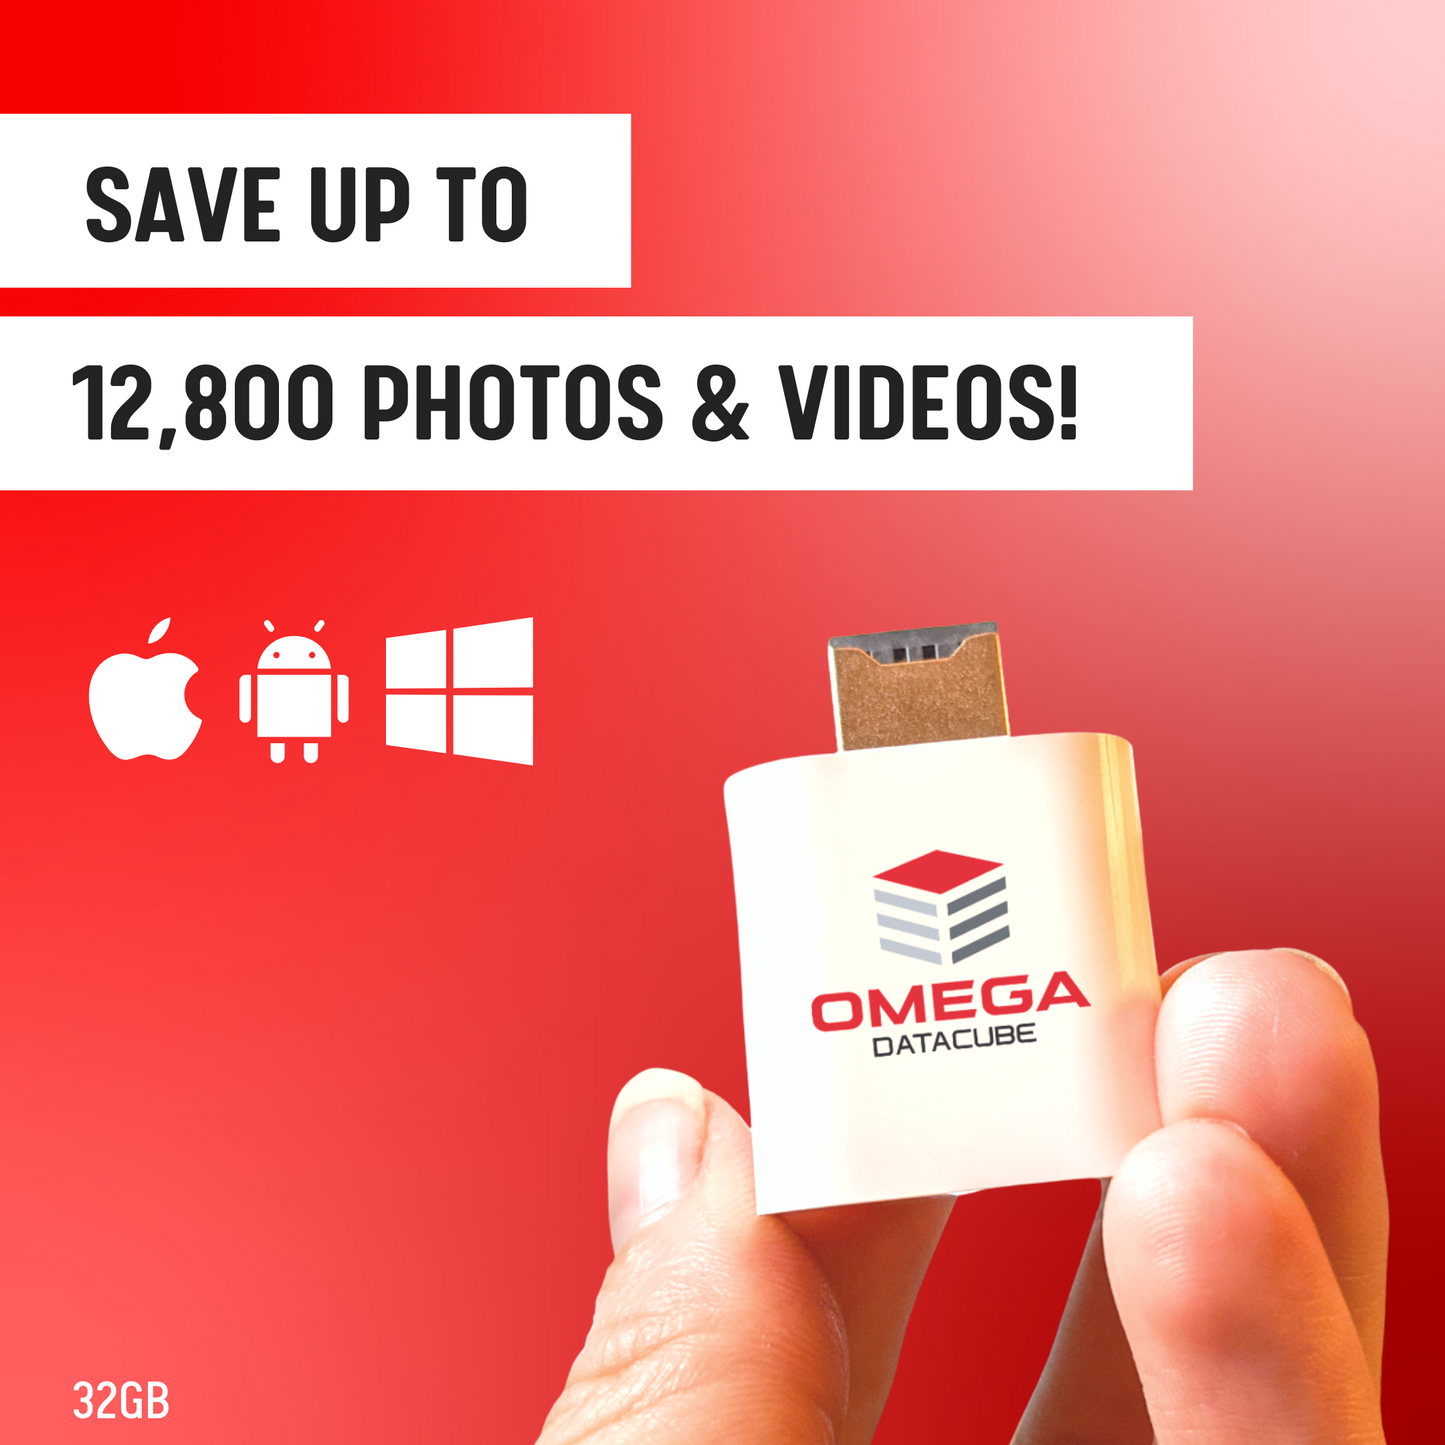 Omega DataCube | 32 GB